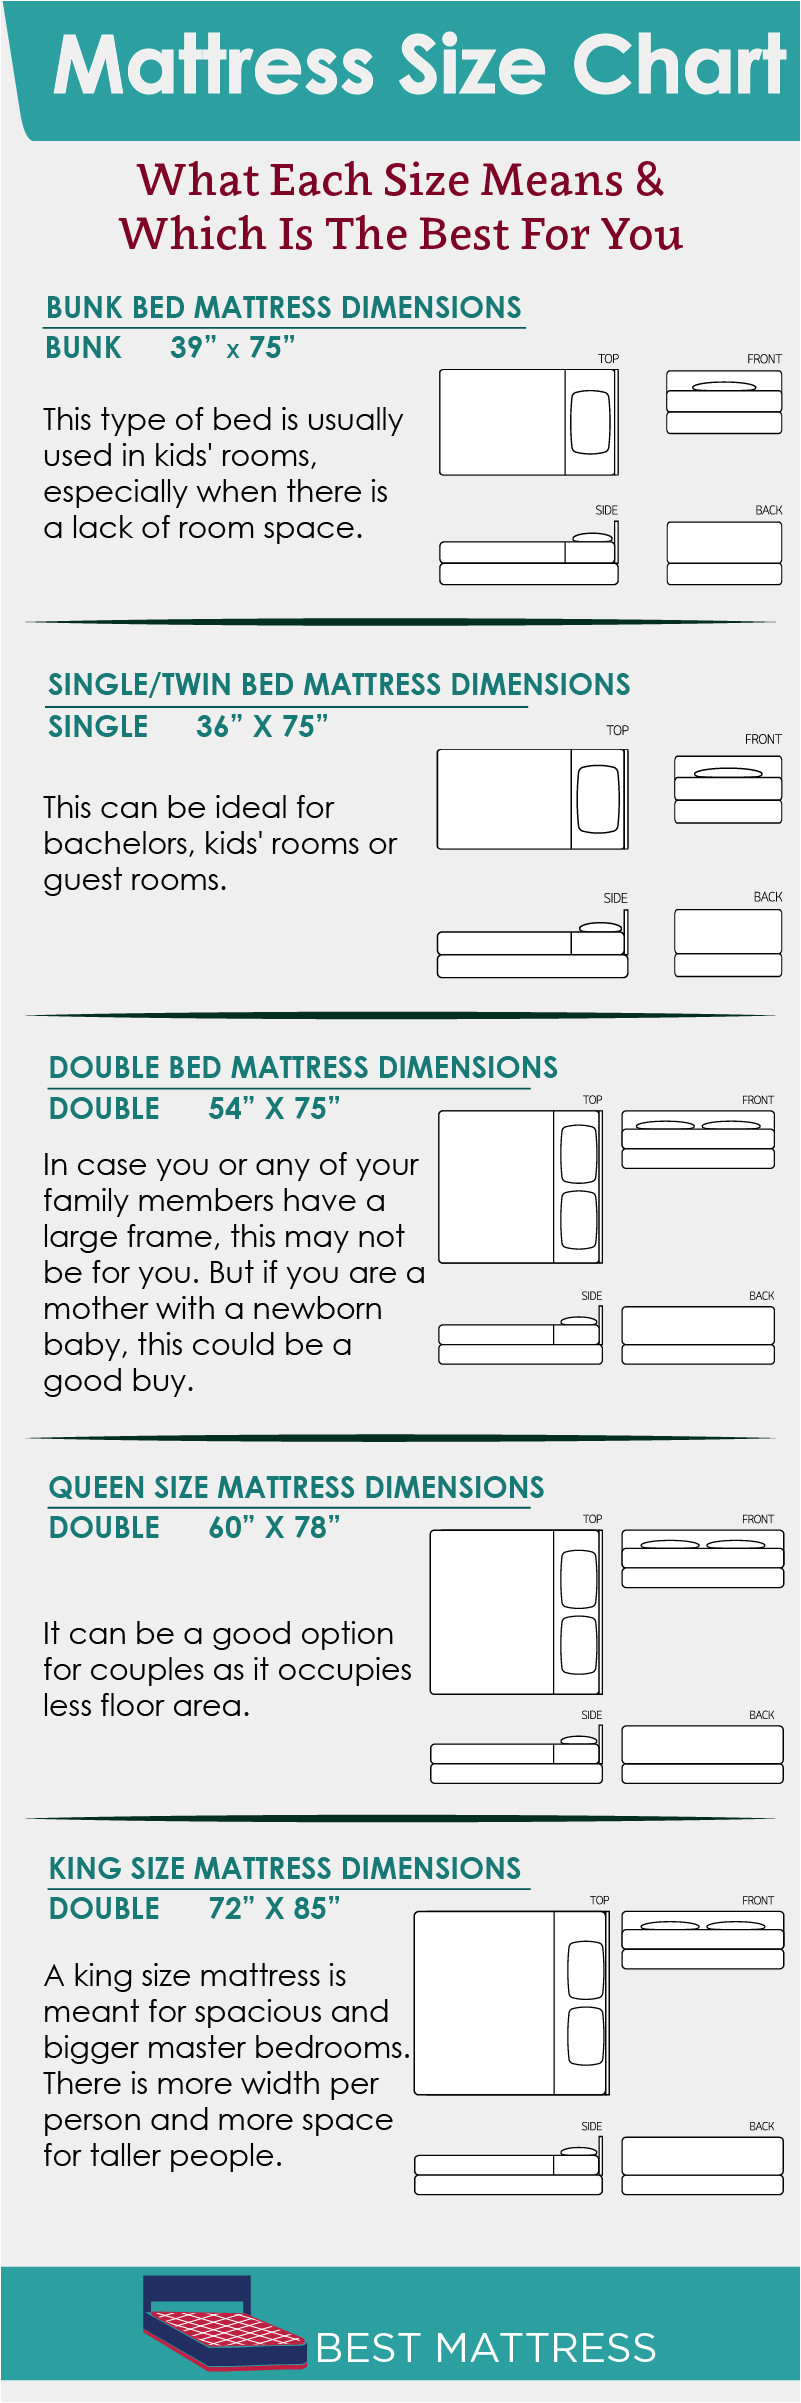 mattress size chart 01